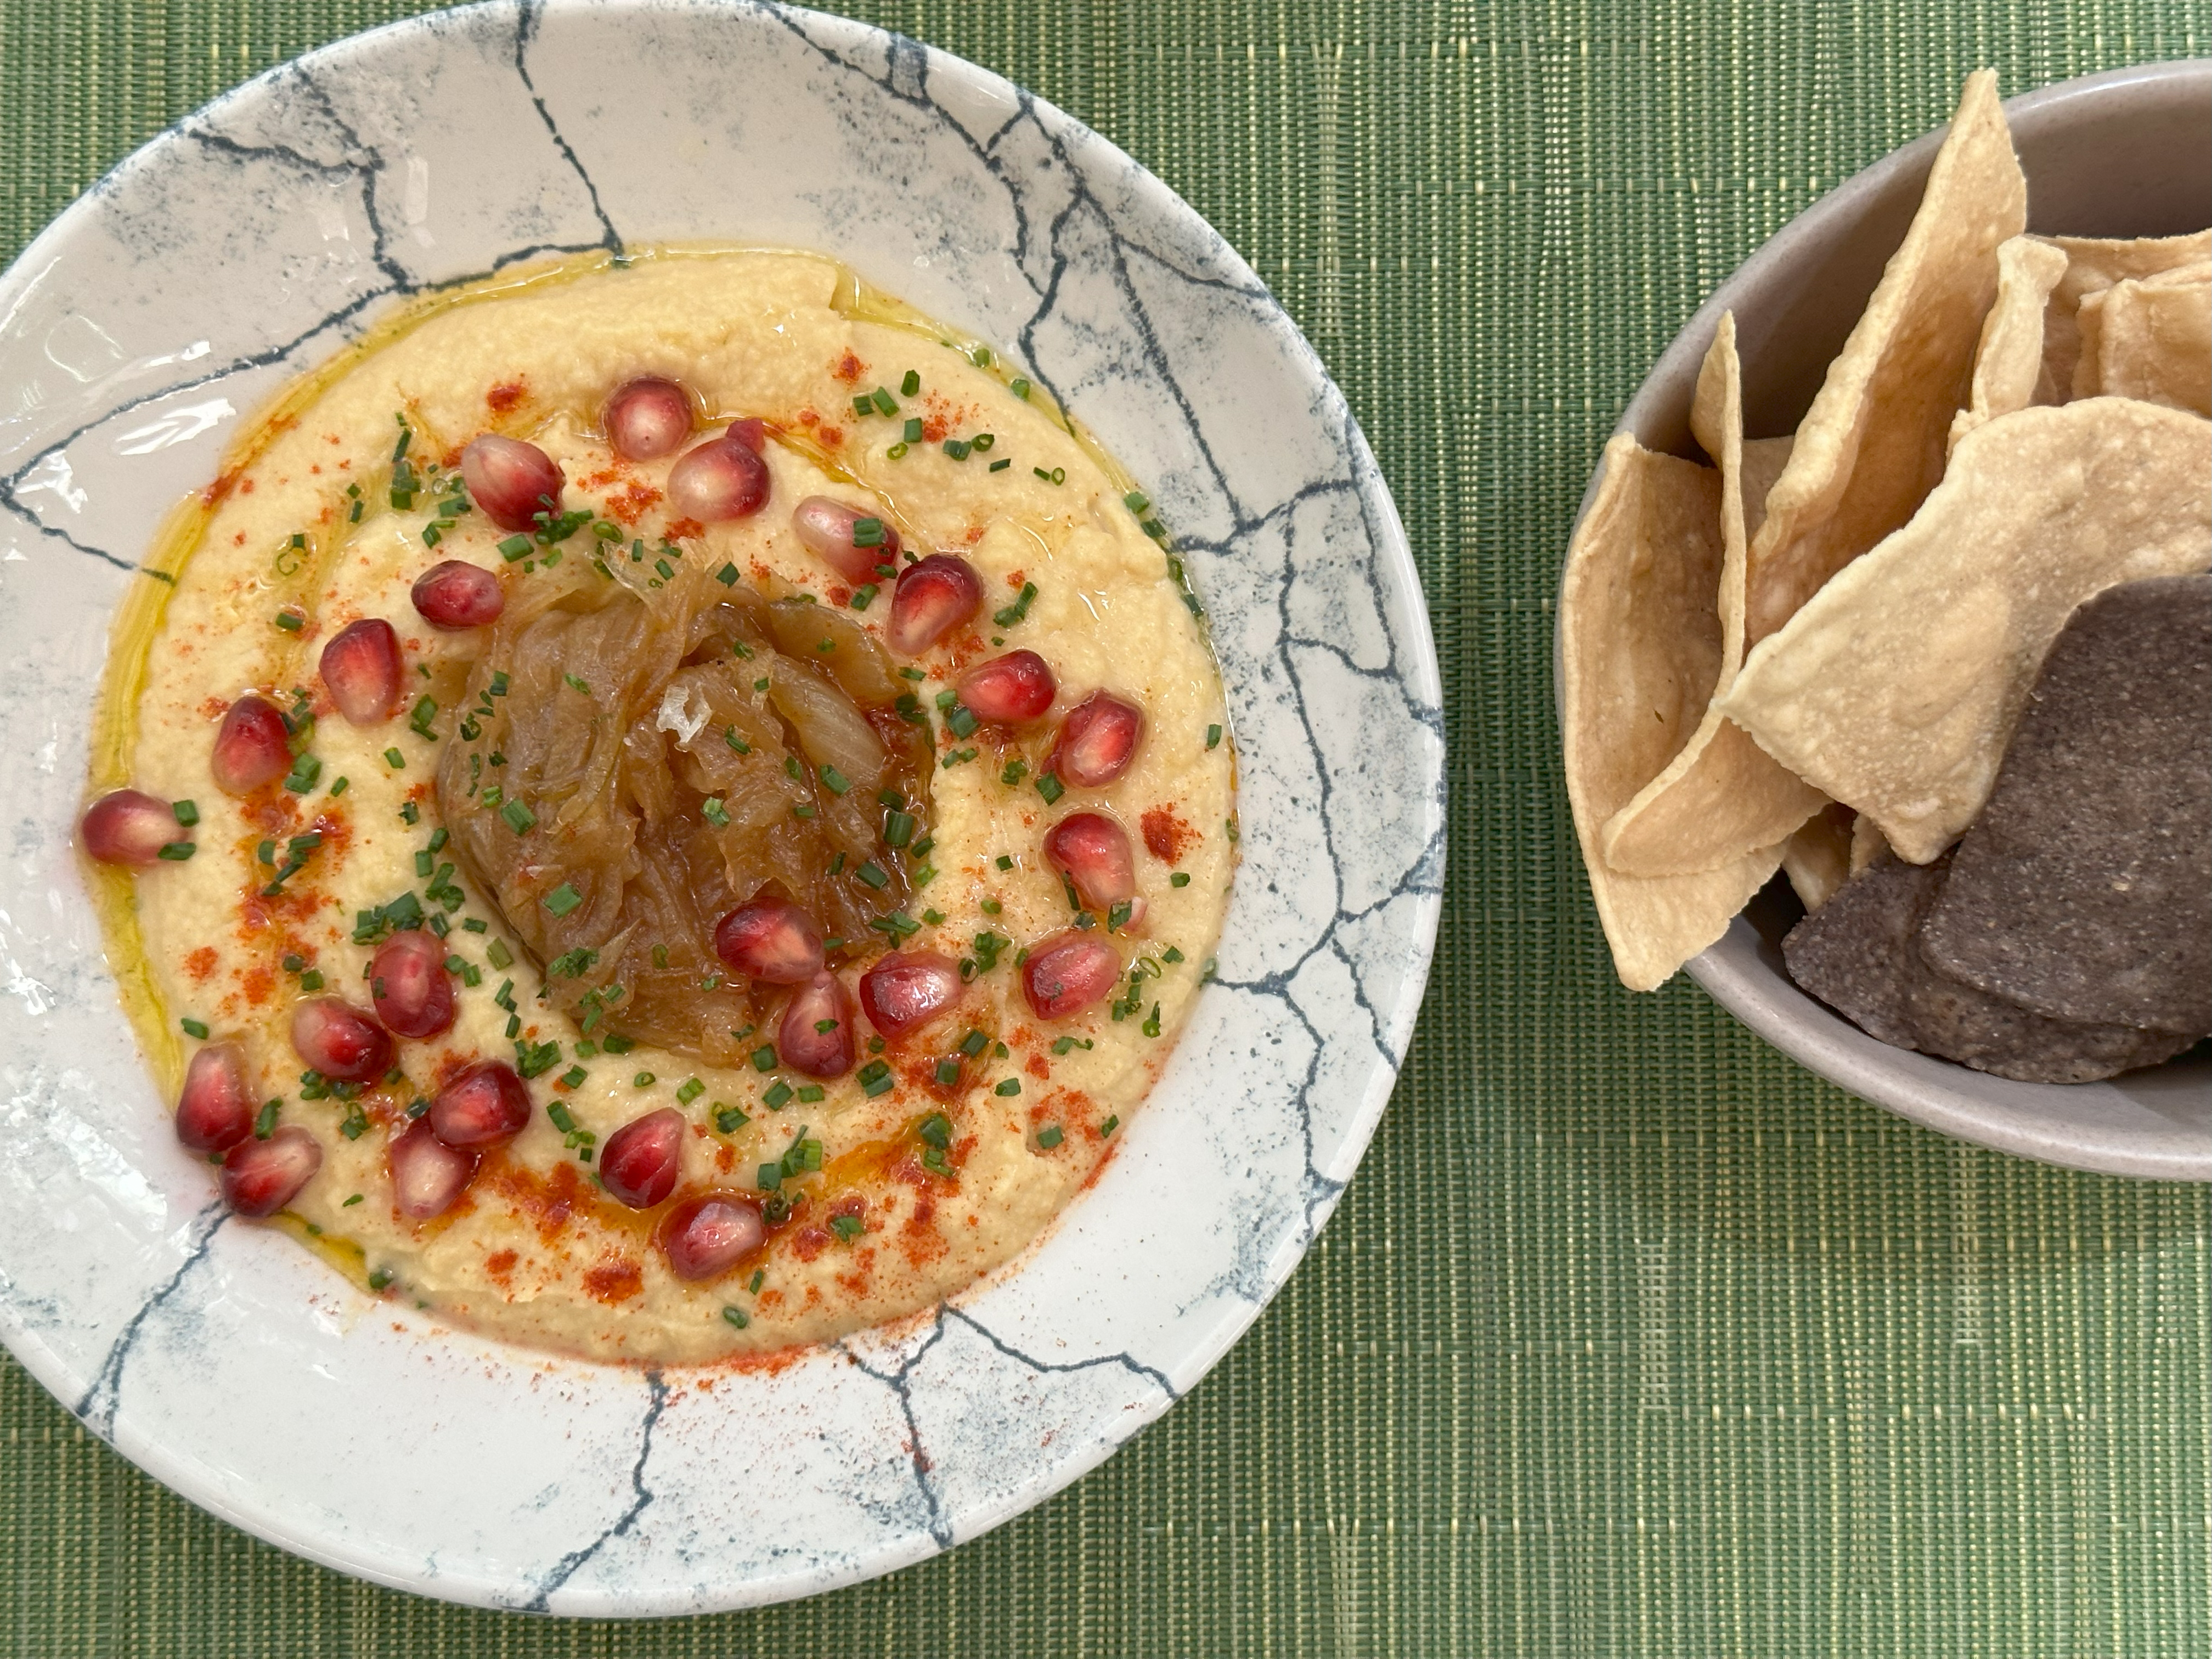 Hummus con cebolla caramelizada, granada y pan de pita